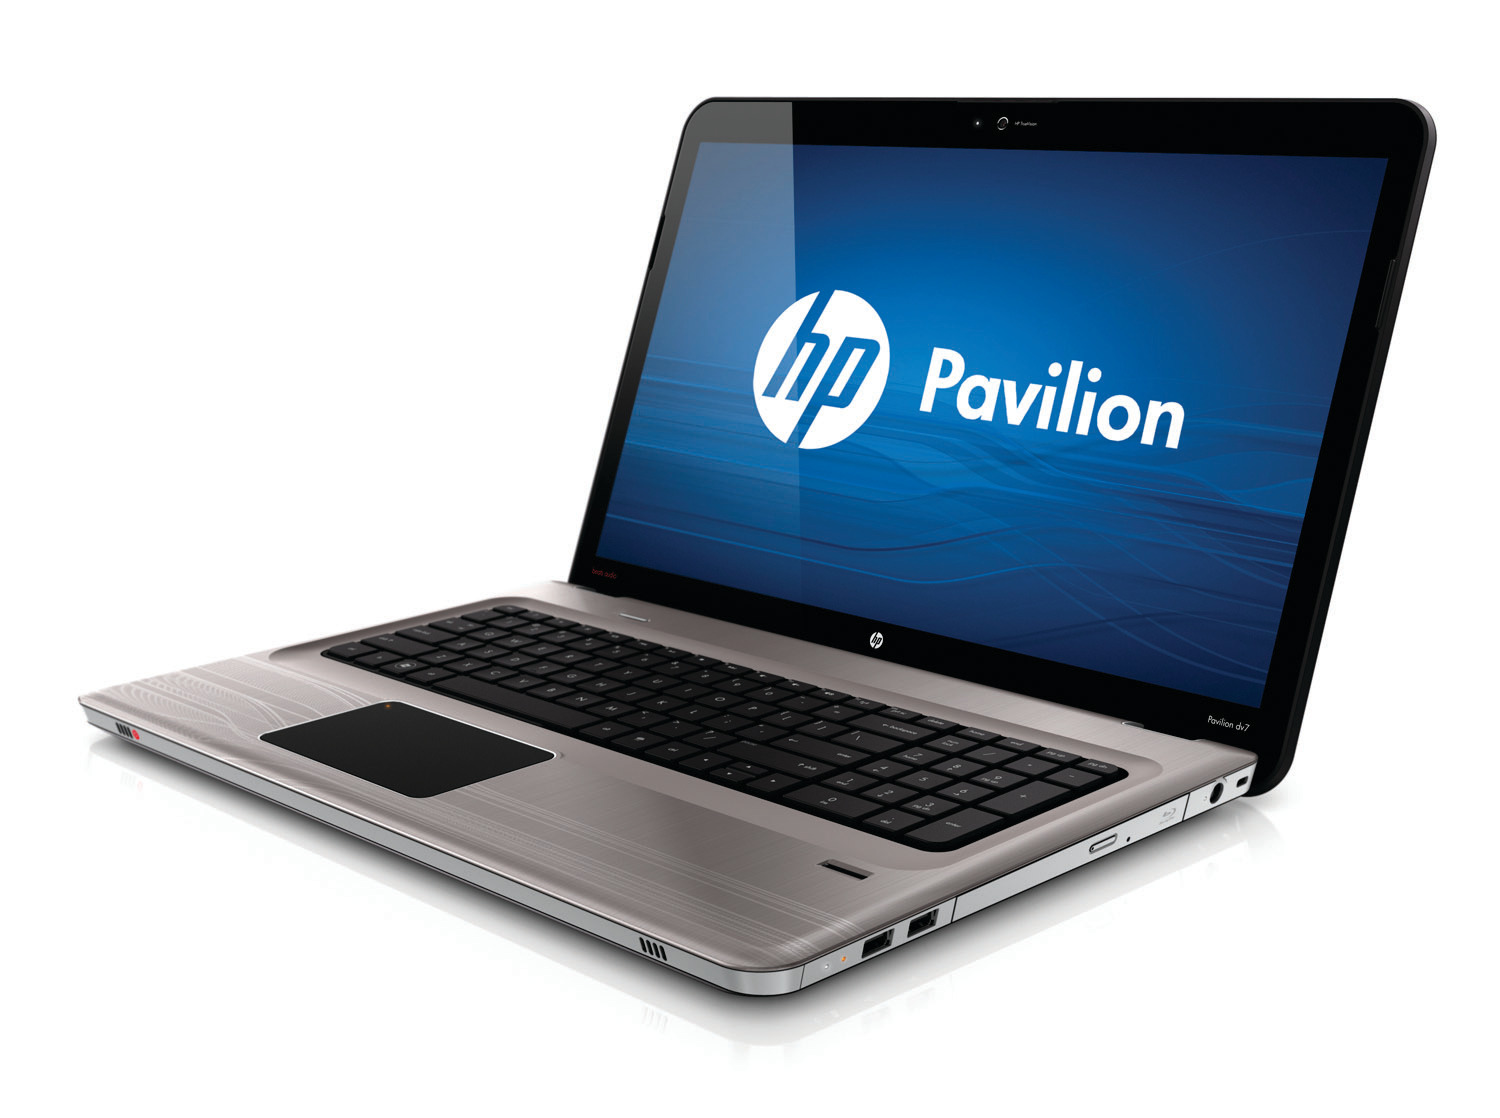 Pavilion dv7-4300 Entertainment Notebook PC series